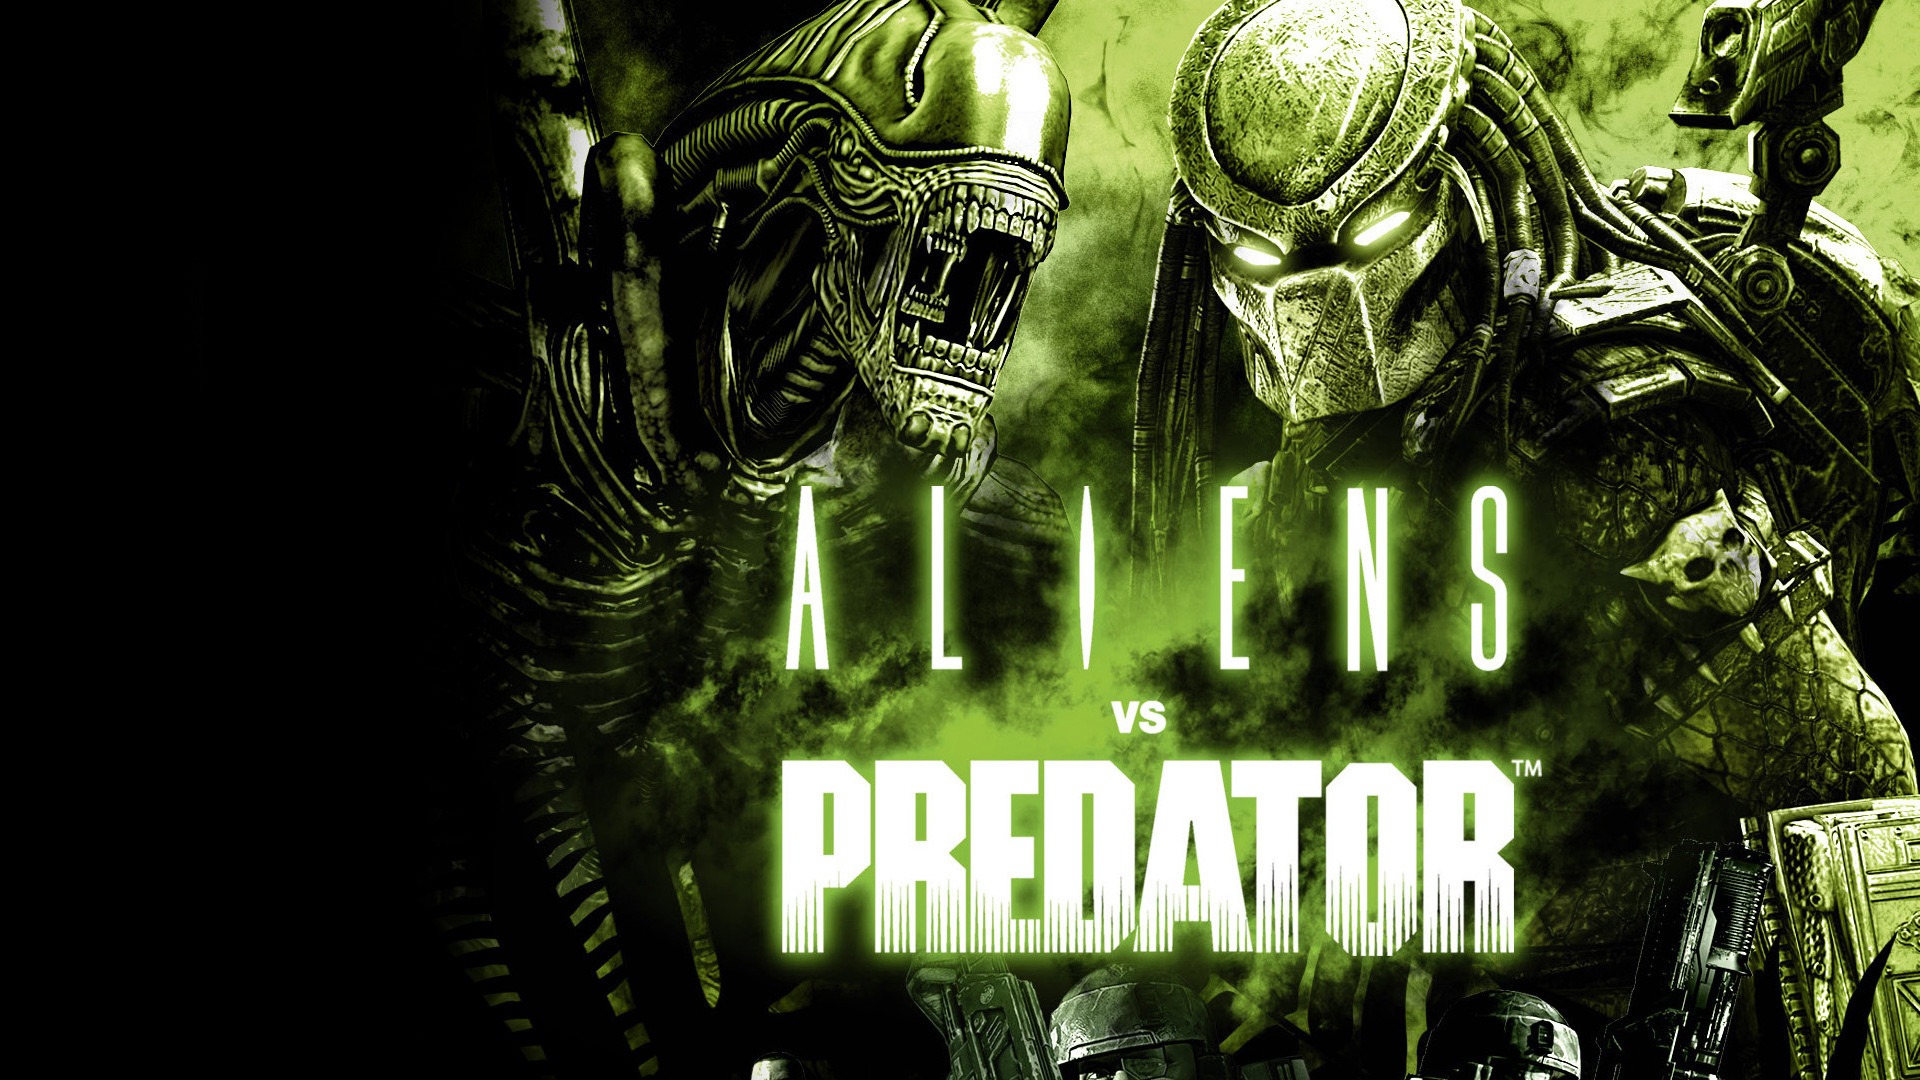 Alien vs predator collection steam